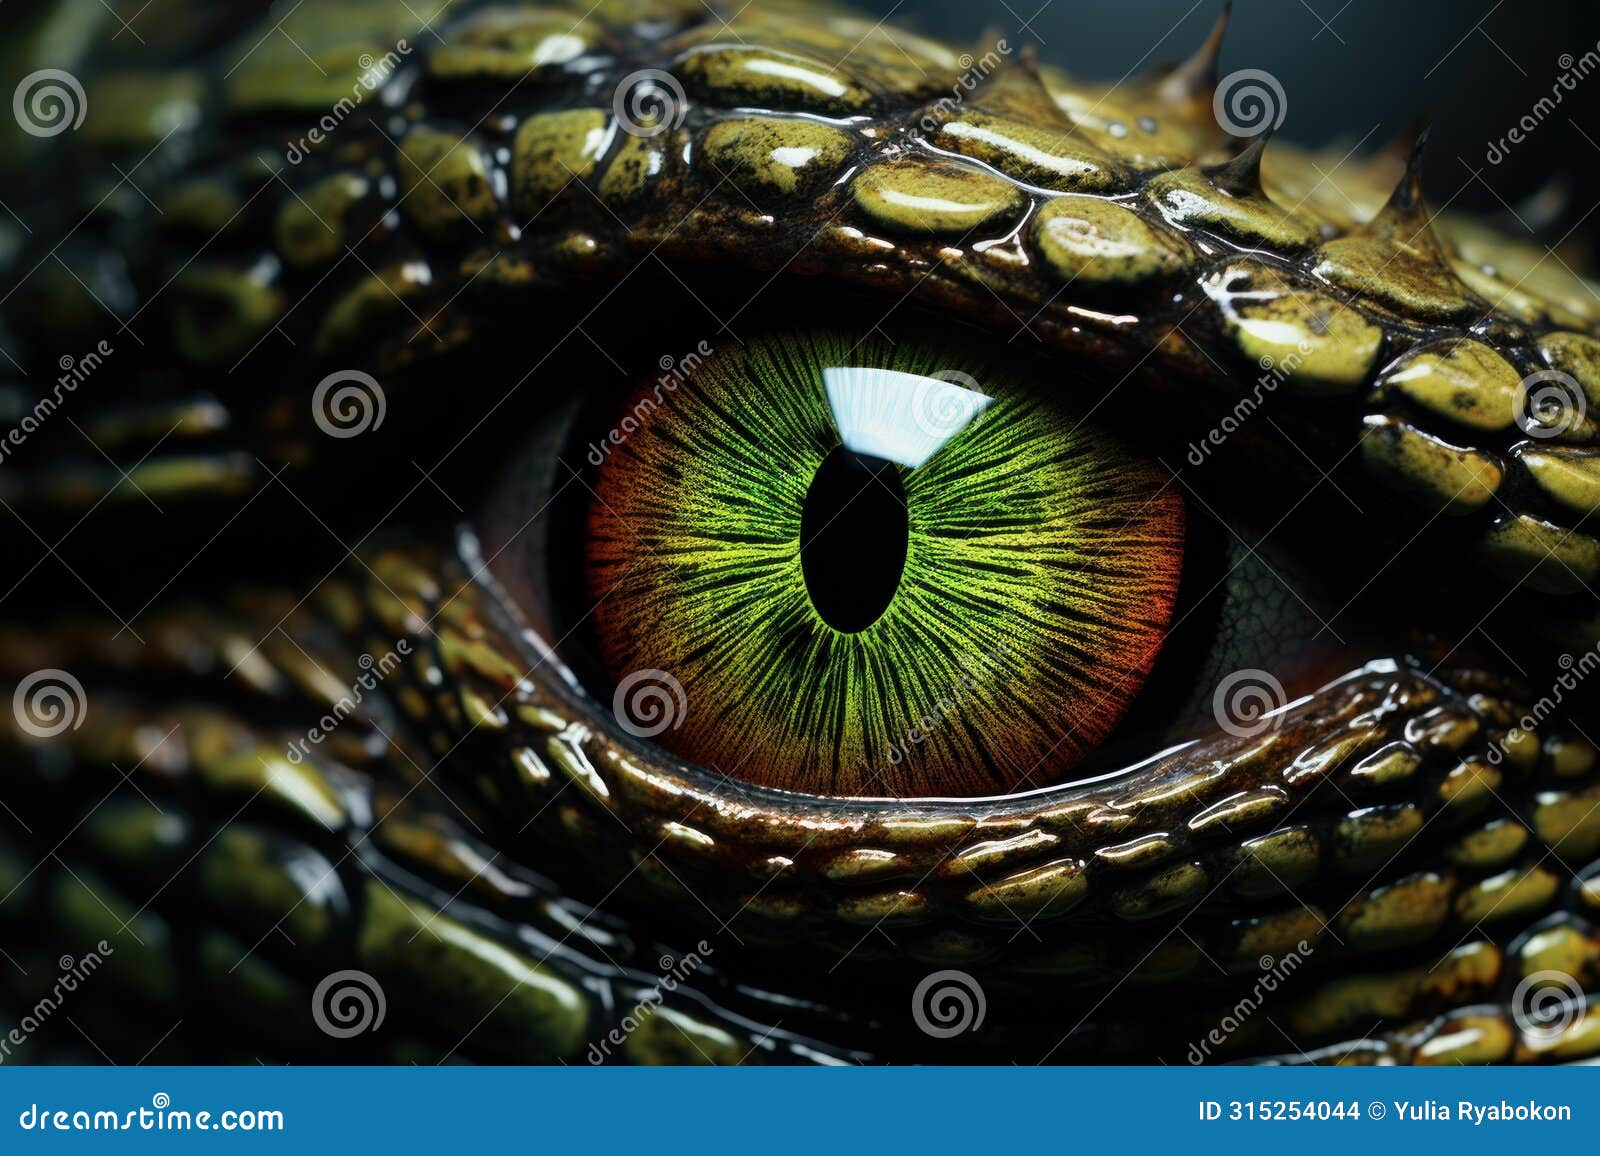 hypnotic reptilian eye macro. generate ai